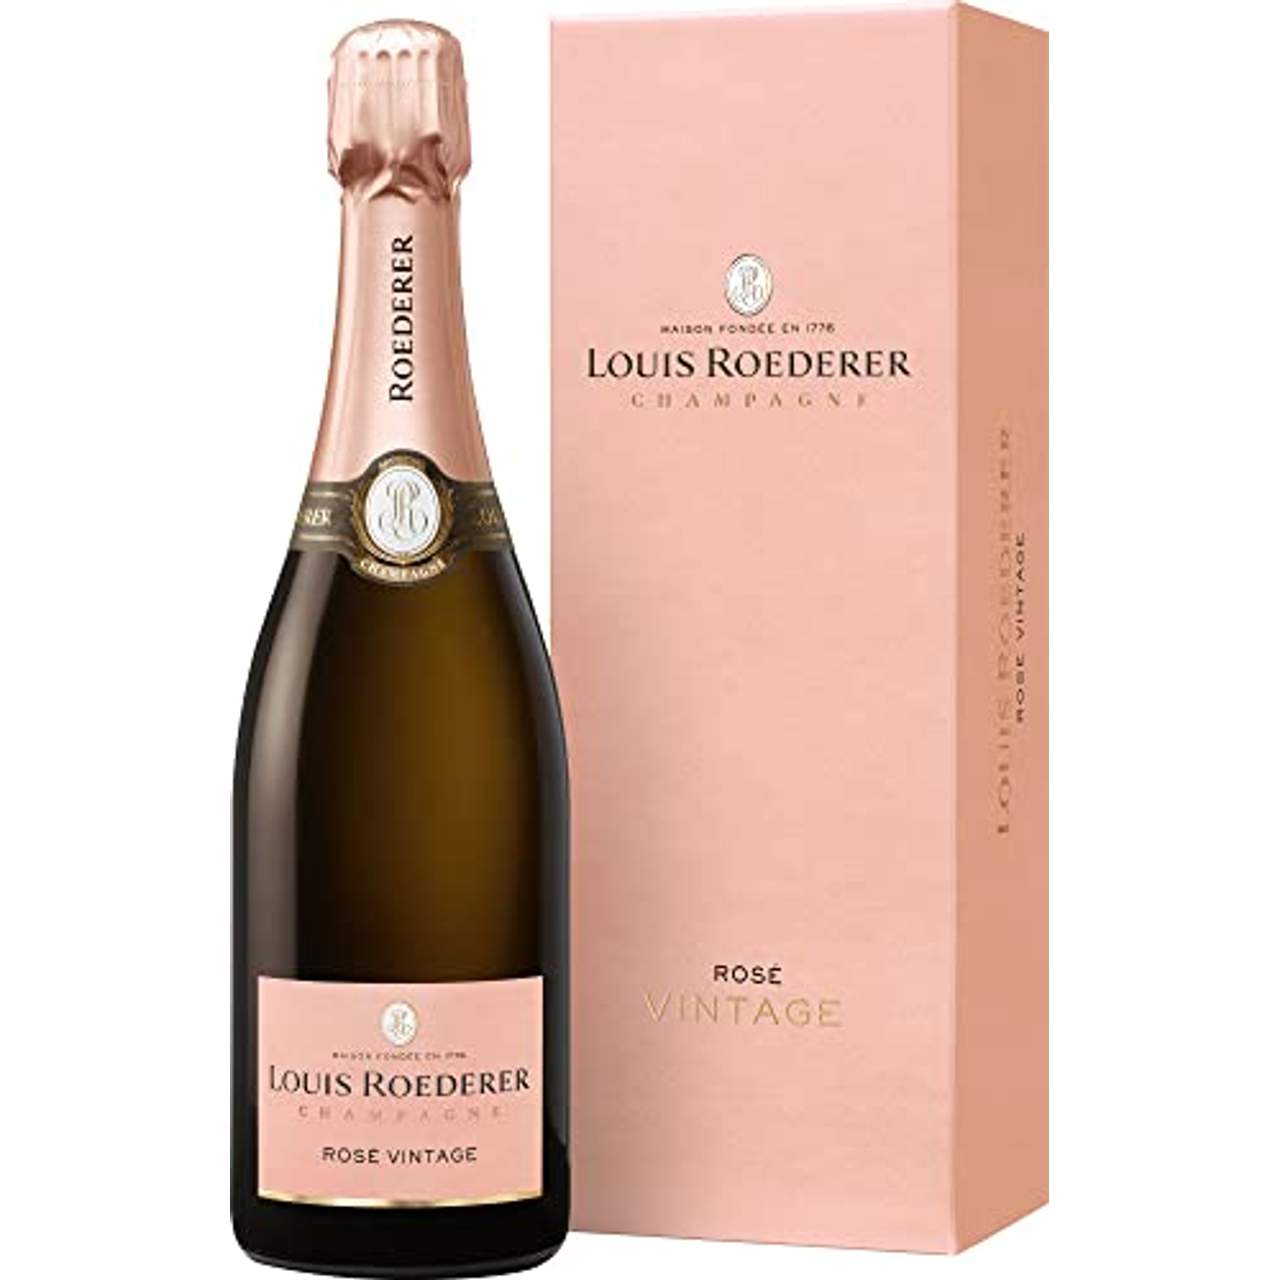 Champagne Louis Roederer Brut Rosé Deluxe 2011/2012 trocken